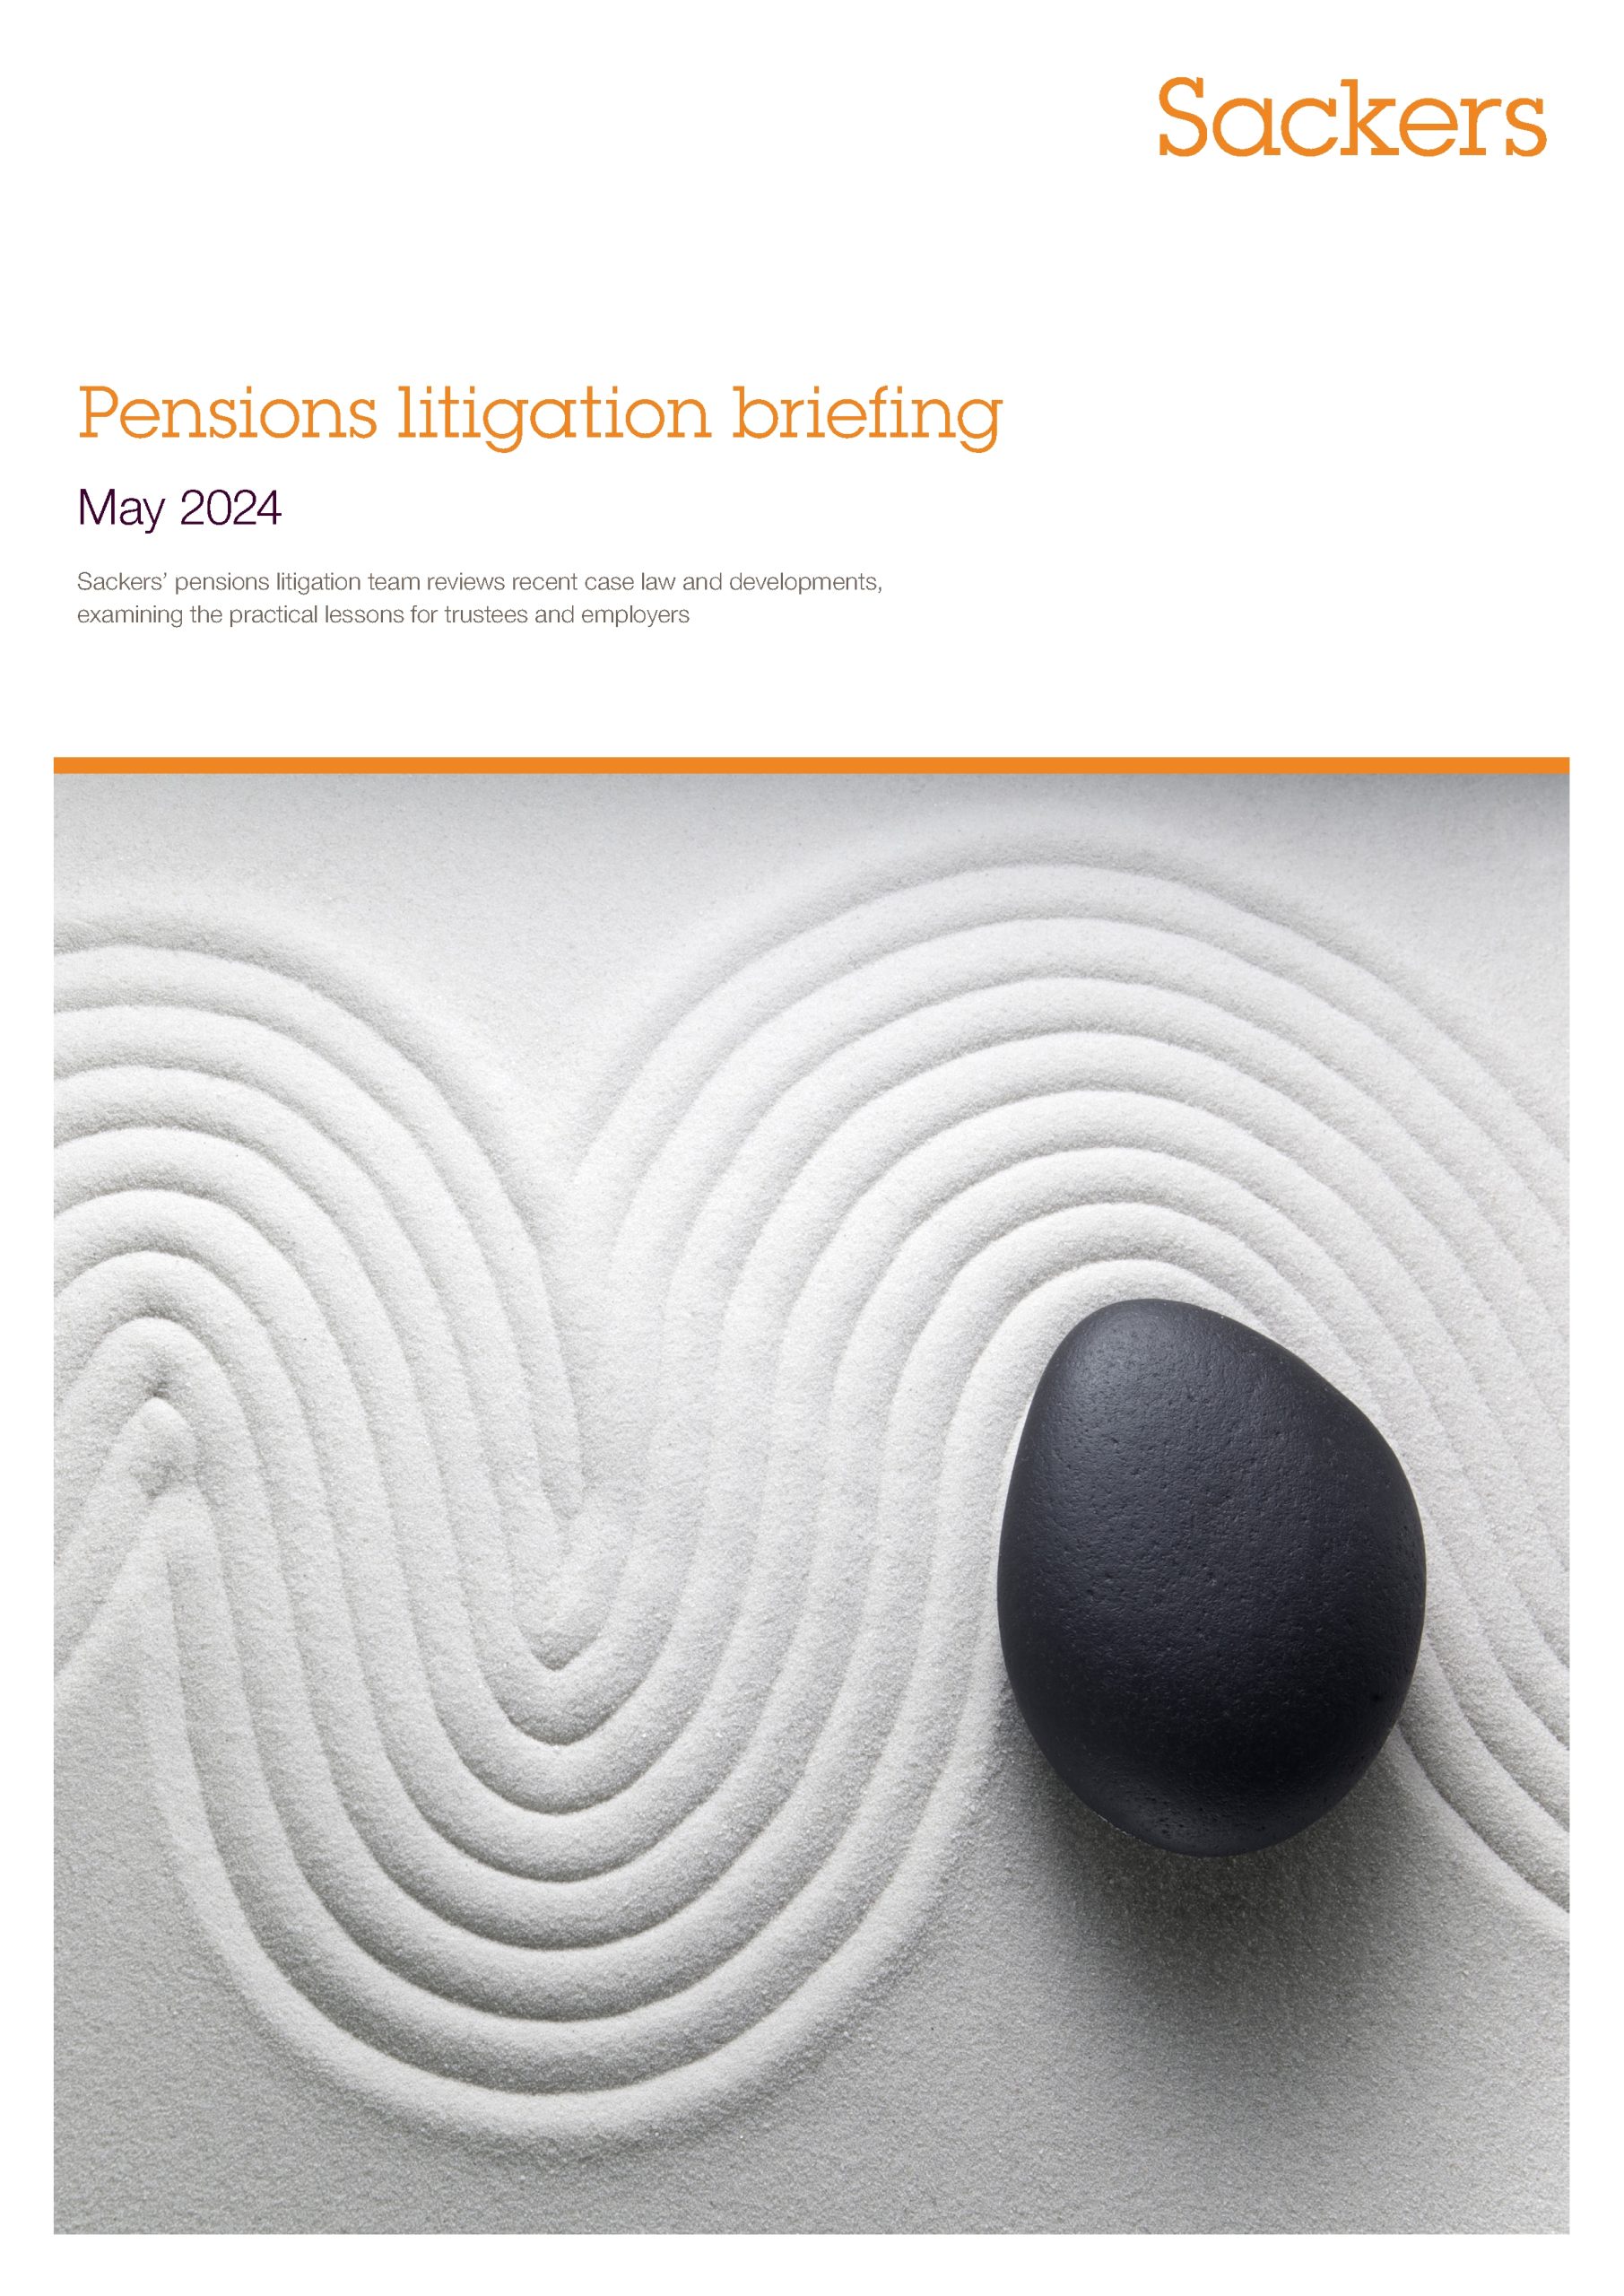 Pensions Litigation briefing